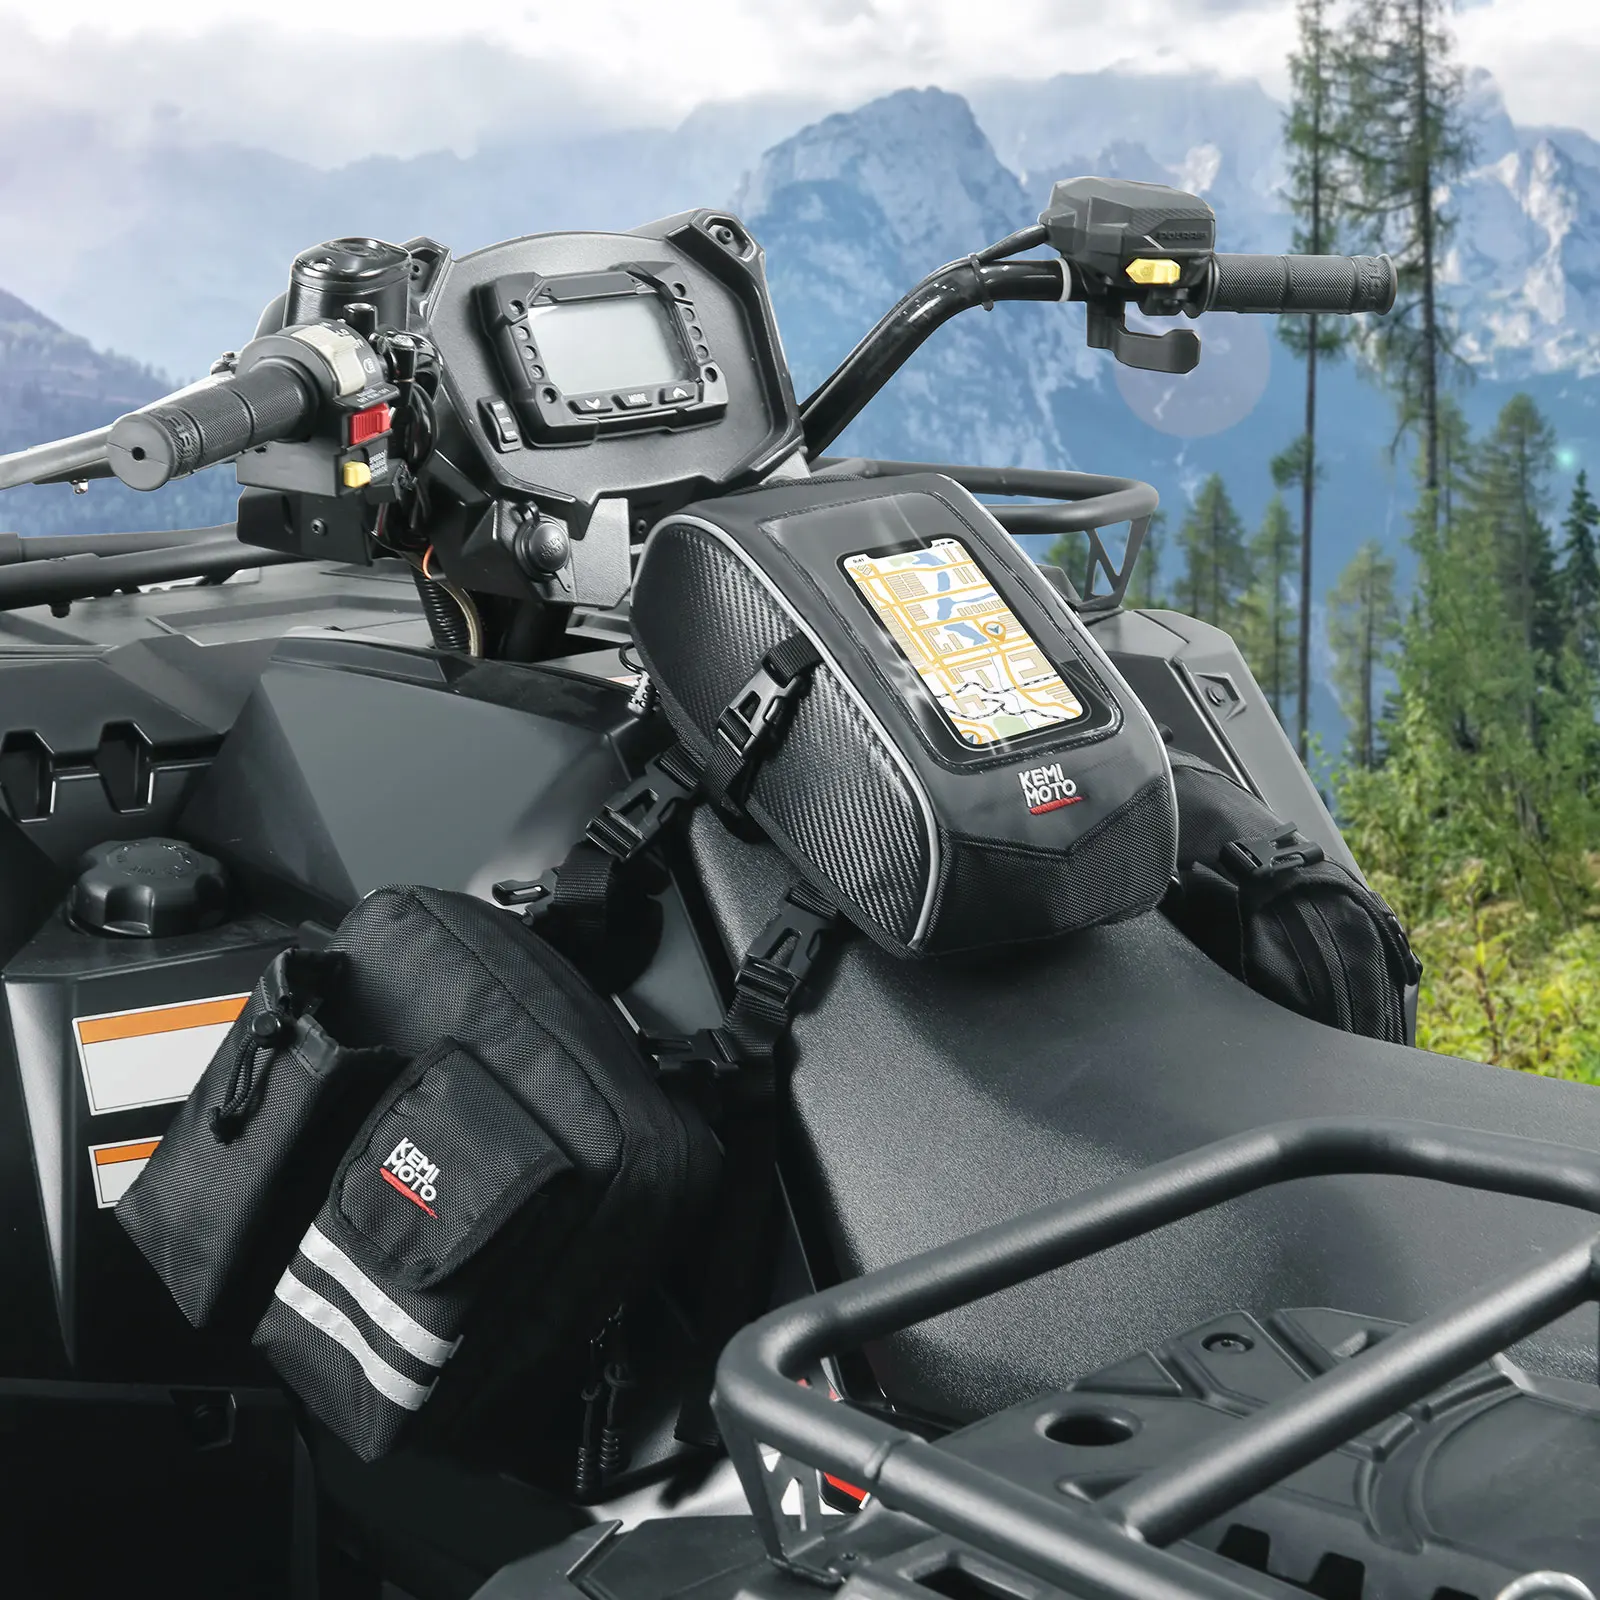 Сумка для топливного бака ATV Universal 1680D Upgrade Сохраняет тепло Совместима с Polaris Для Sportsman 500 570 800 для Yamaha Raptor Banshee - 0